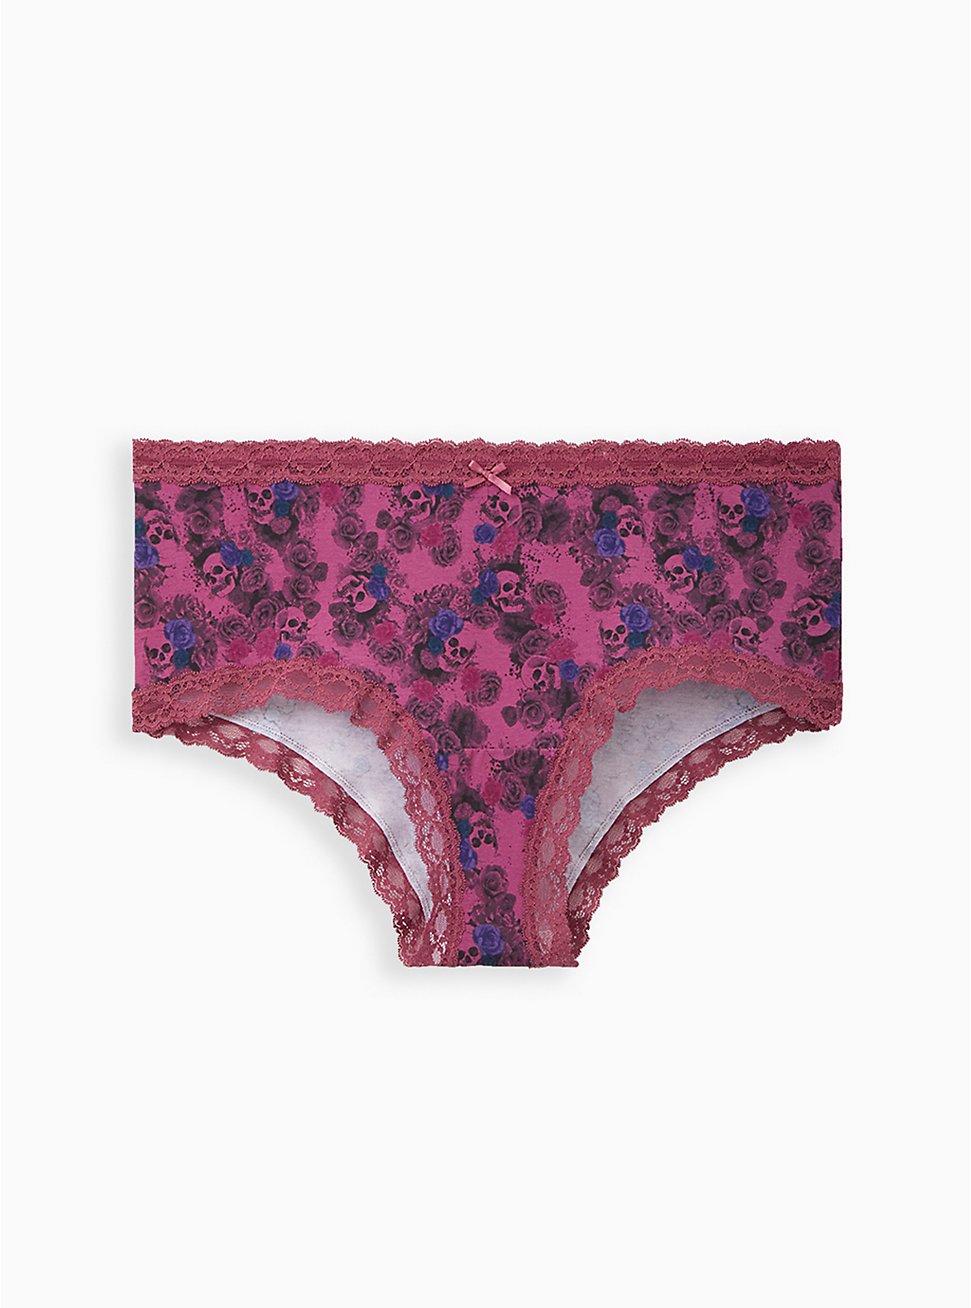 Plus Size Wide Lace Trim Cheeky Panty - Cotton Floral Purple, MULTI FORAL, hi-res